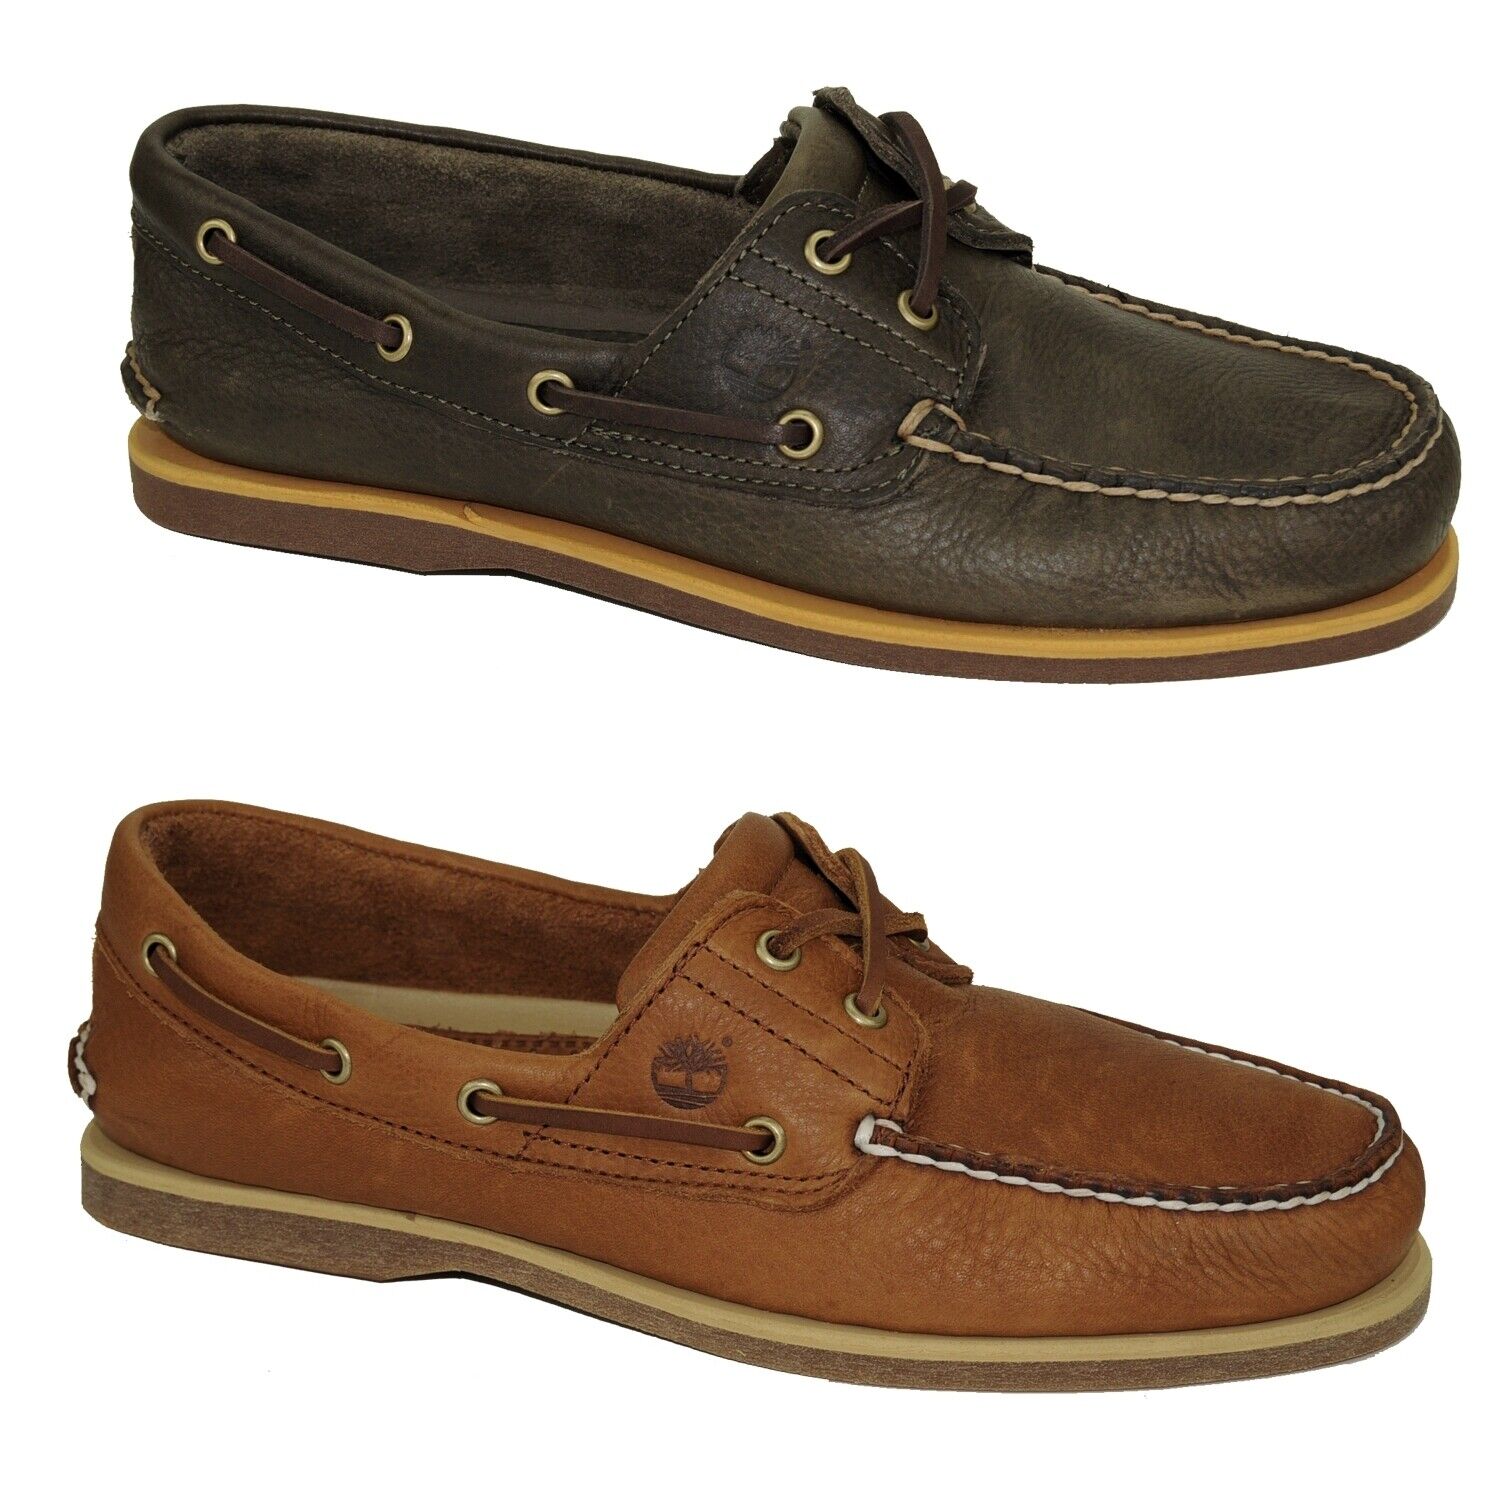 Timberland Classic Boat Shoes 2-Eye Deckschuhe Segelschuhe Herren Schuhe Modell- Farbe A2AFC - Olive Schuhgröße EUR 44,5 US 10,5